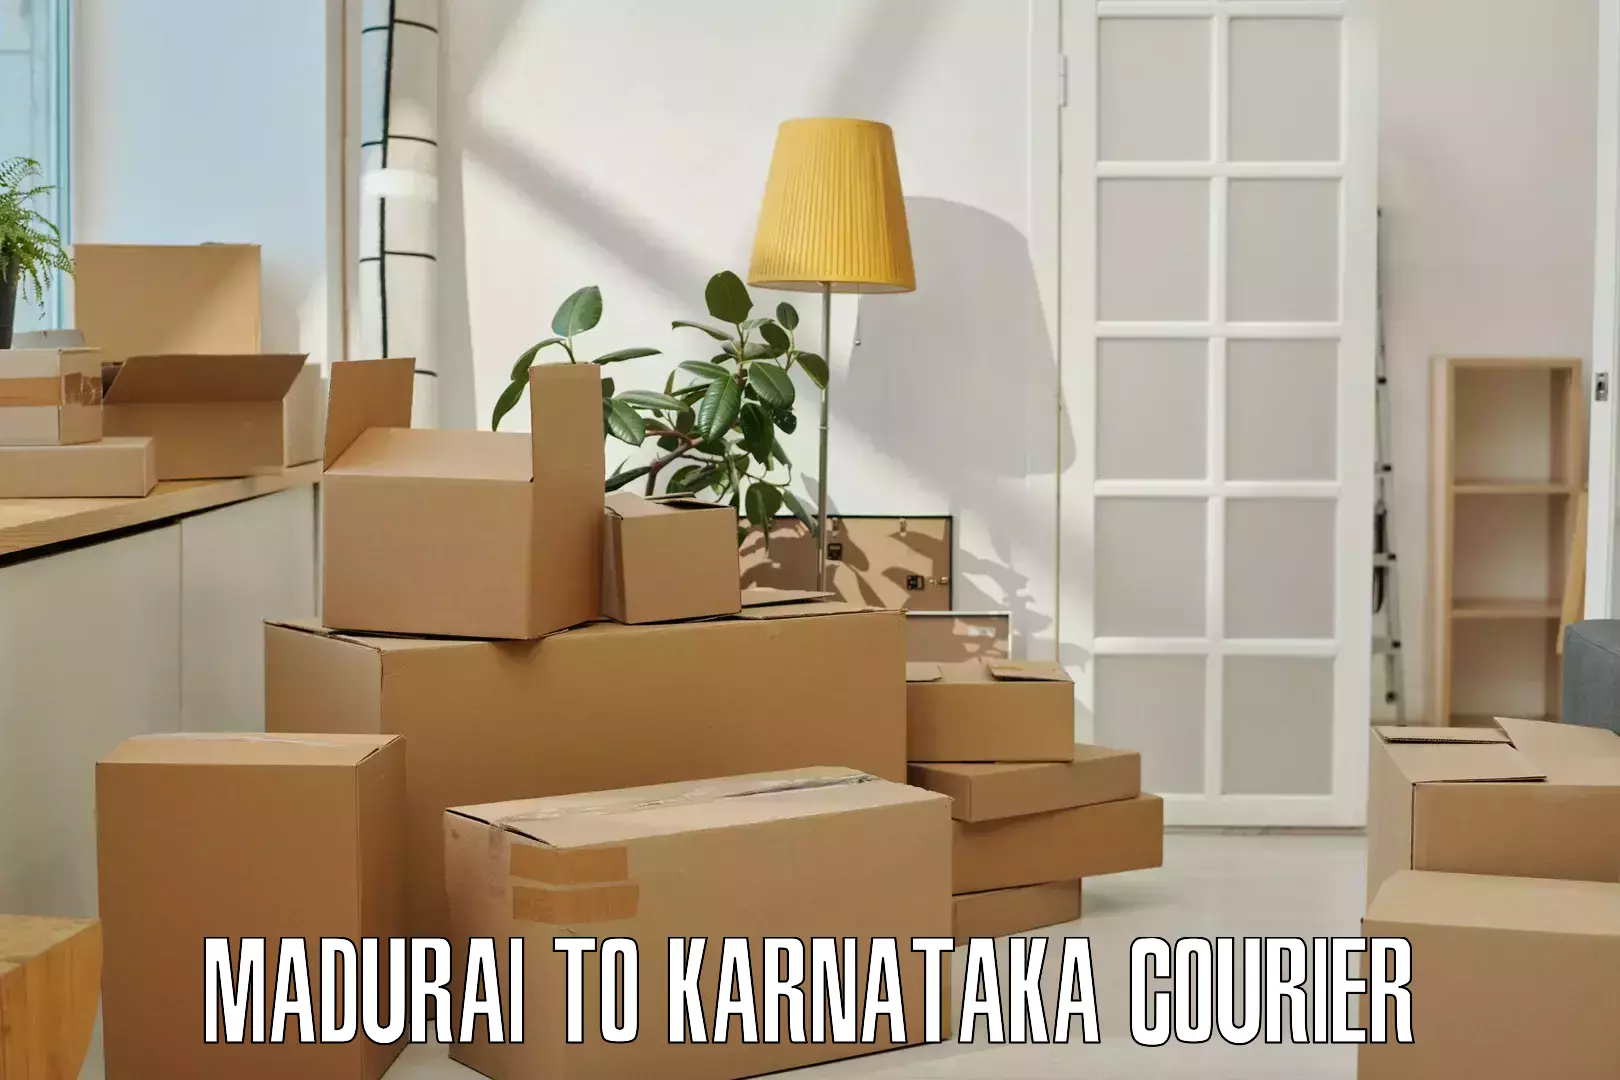 Cargo delivery service Madurai to Uchila